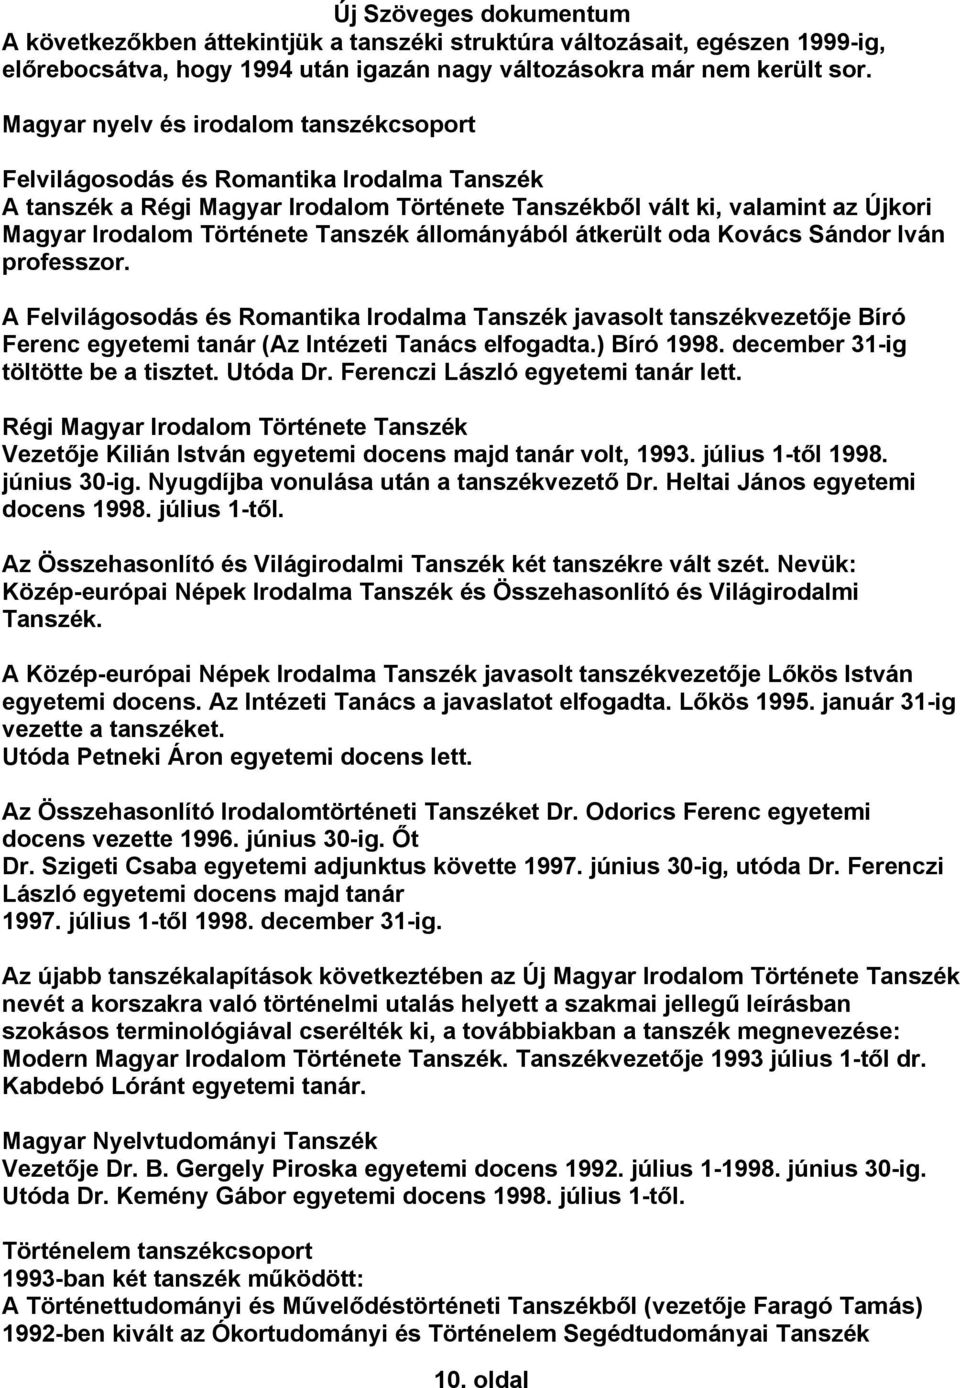 Új Szöveges dokumentum A Miskolci Egyetem Bölcsészettudományi Karának  története a kezdetektől 1999-ig - PDF Ingyenes letöltés